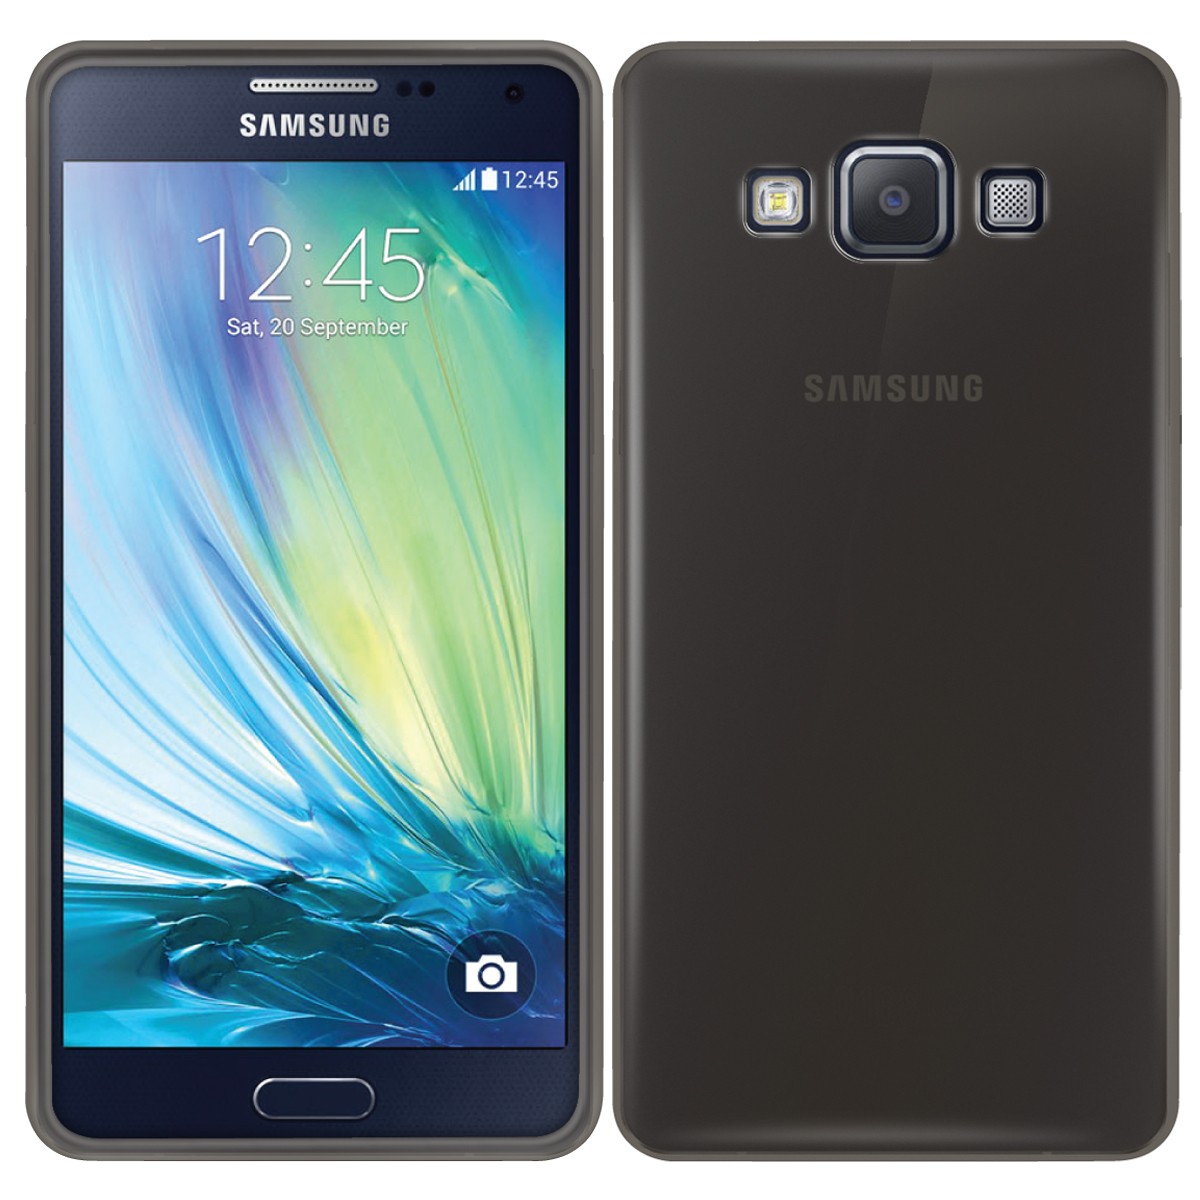 Как сделать скриншот на Самсунге Галакси А5? - Форум Samsung Galaxy A5